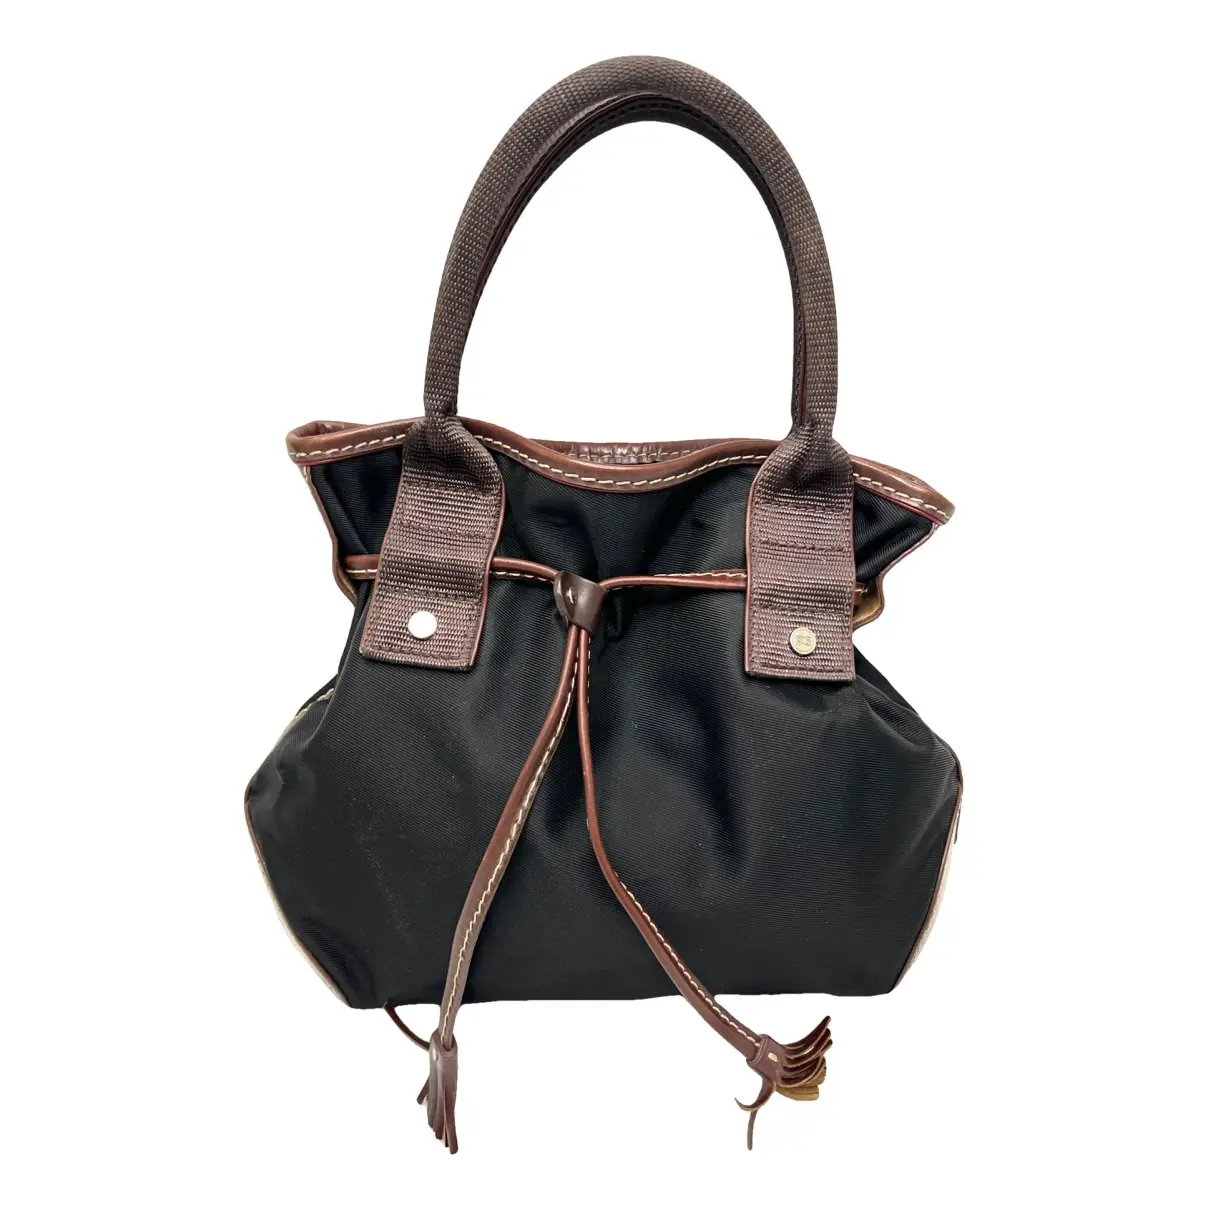 Brigitte Bardot cloth handbag Lancel